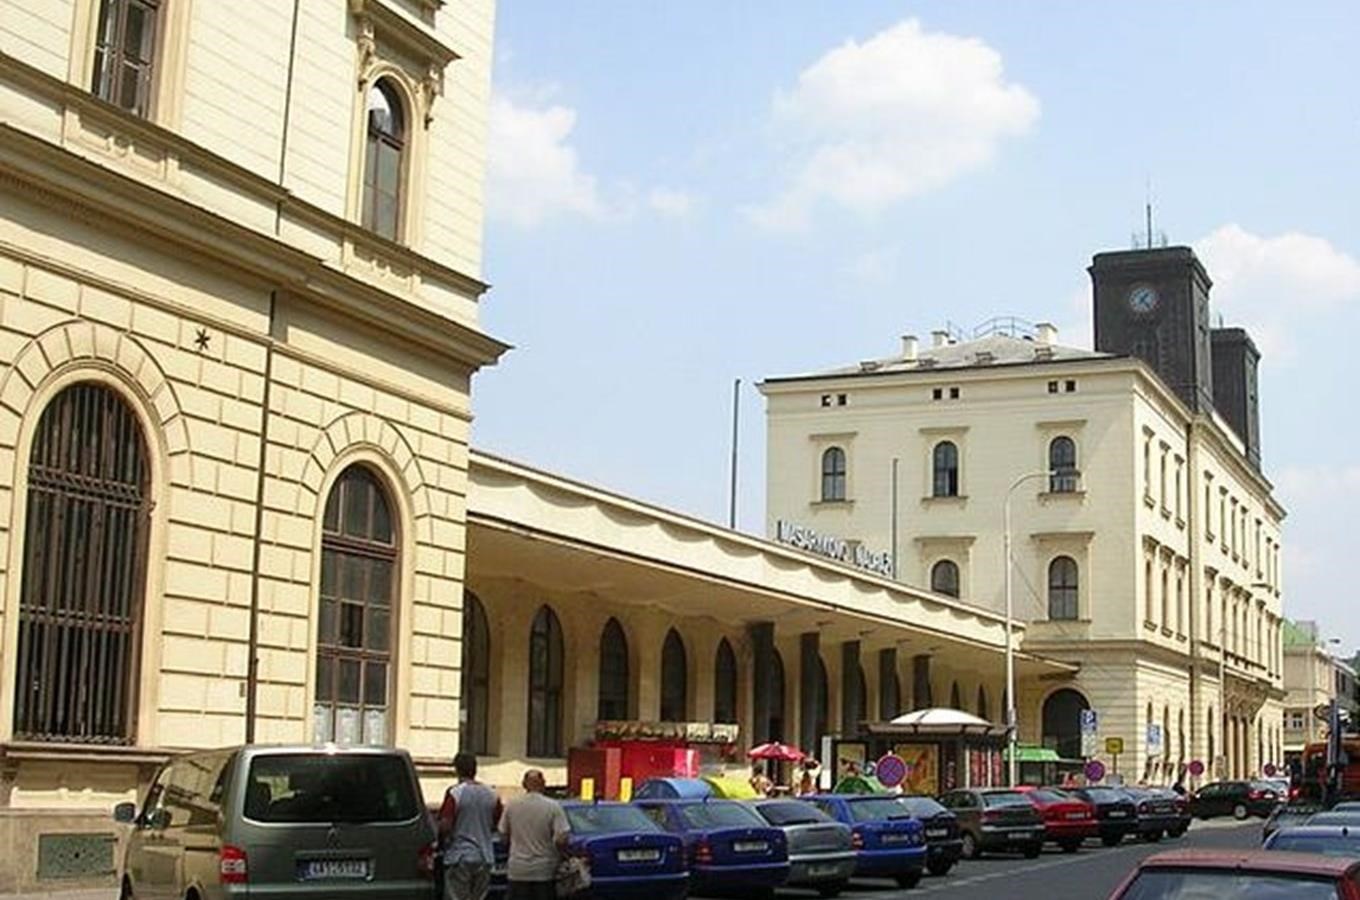 Masarykovo nádraží po částečné rekonstrukci